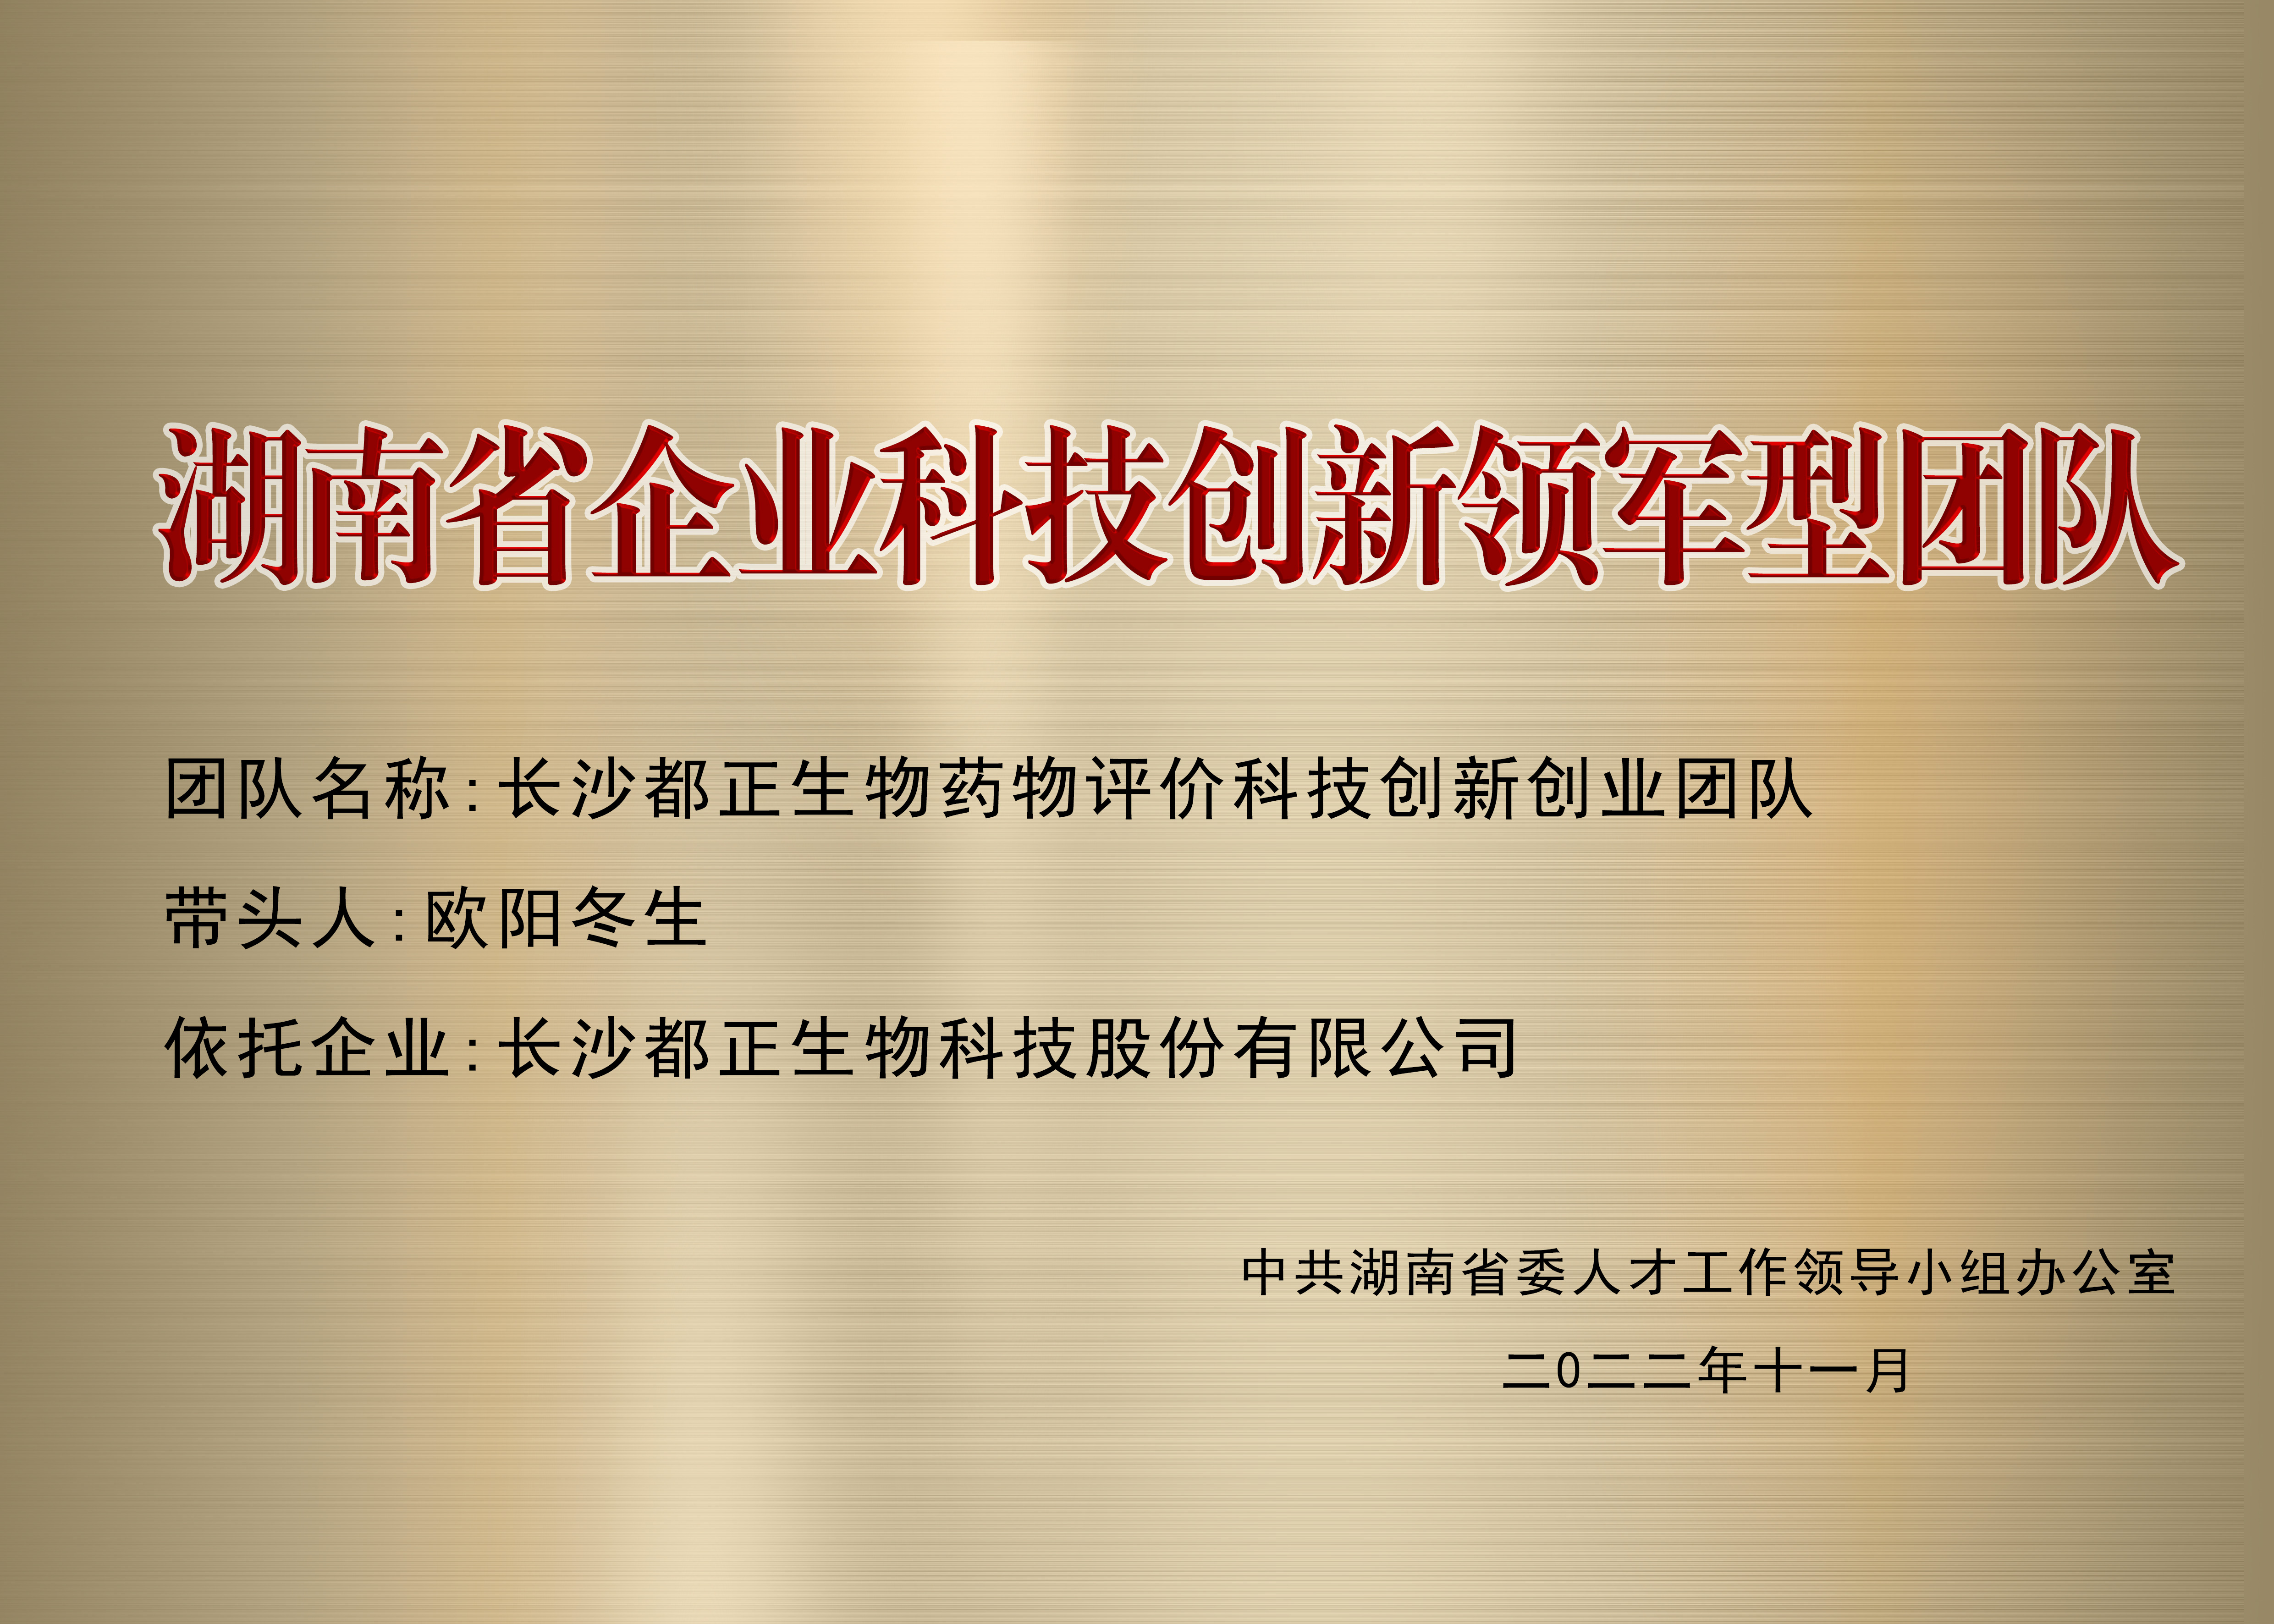 2022年 湖南省企業科技創新領軍型團隊